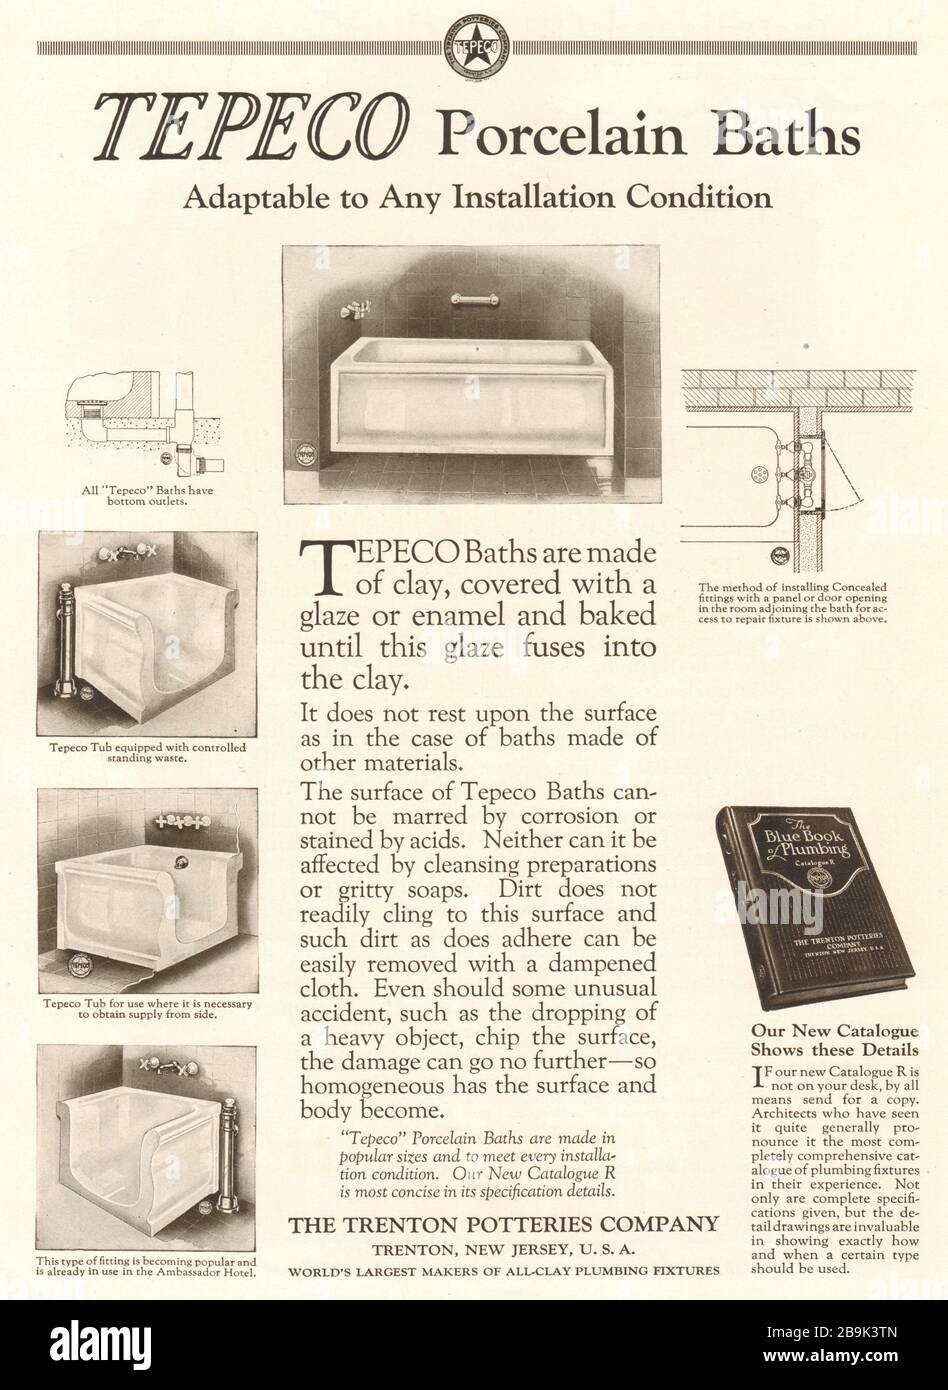 Bains en porcelaine Tepeco, adaptables à toutes les conditions d'installation. La Trenton Potteries Company, Trenton, New Jersey, États-Unis (1922) Banque D'Images